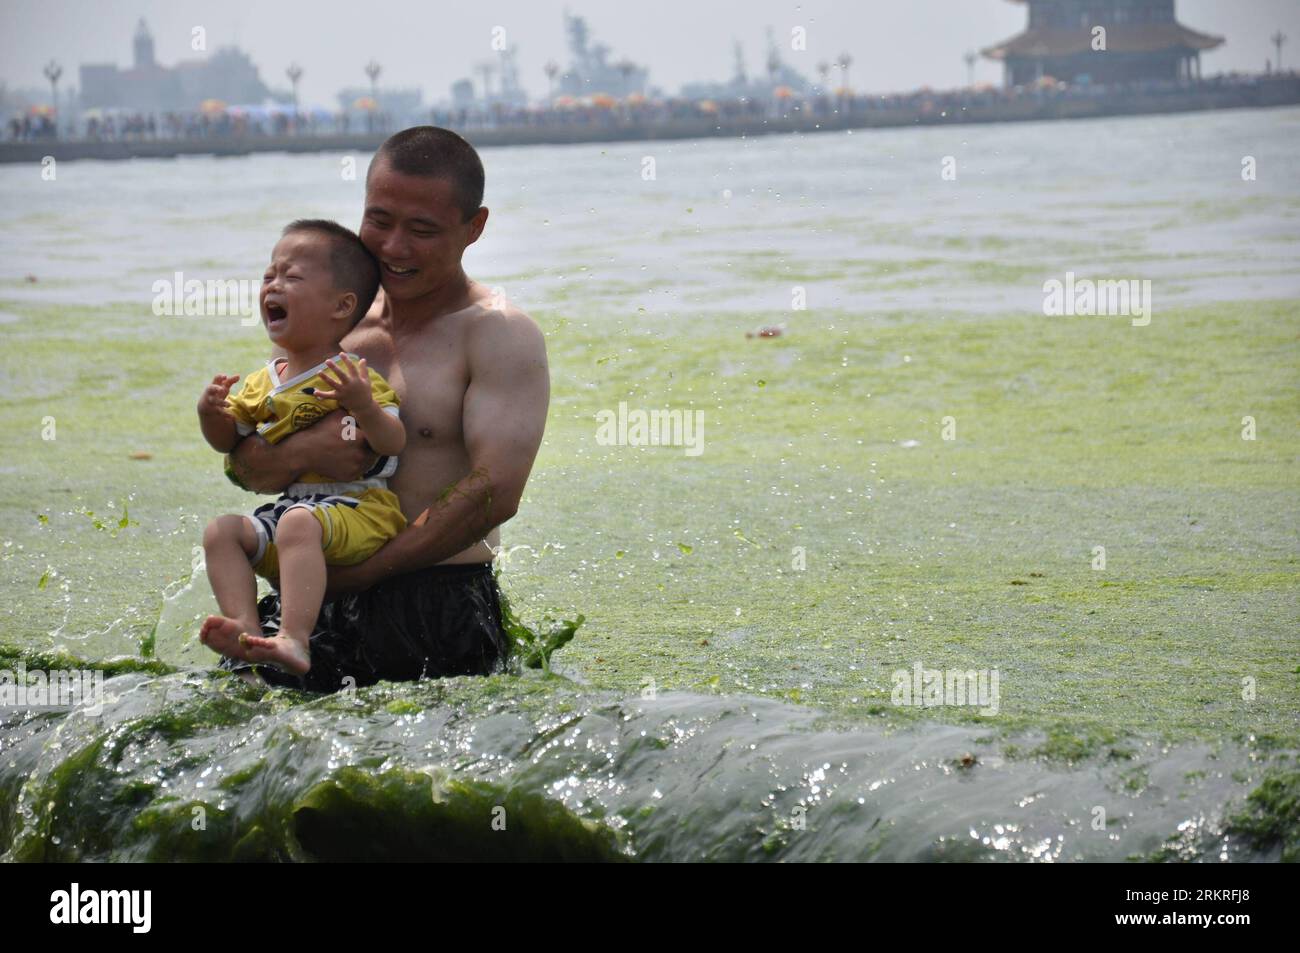 Bildnummer: 58238383 Datum: 12.07.2012 Copyright: imago/Xinhua (120713) -- QINGDAO, 13 luglio 2012 (Xinhua) -- Un uomo tiene un ragazzo in acqua marina piena di alghe verdi nella sesta spiaggia balneare pubblica di Qingdao, nella provincia dello Shandong della Cina orientale, 12 luglio 2012. Le alghe verdi, o enteromorpha prolifera, hanno colpito le spiagge balneari pubbliche di Qingdao da mercoledì. (Xinhua/Huang Jiexian) (lfj) CHINA-SHANDONG-QINGDAO-GREEN ALGAE (CN) PUBLICATIONxNOTxINxCHN Gesellschaft Küste Meer Algen Algenpest Wasser China Plage Algenplage xdp x0x 2012 quer 58238383 Data 12 07 2012 Copyright Imago XINHUA Foto Stock